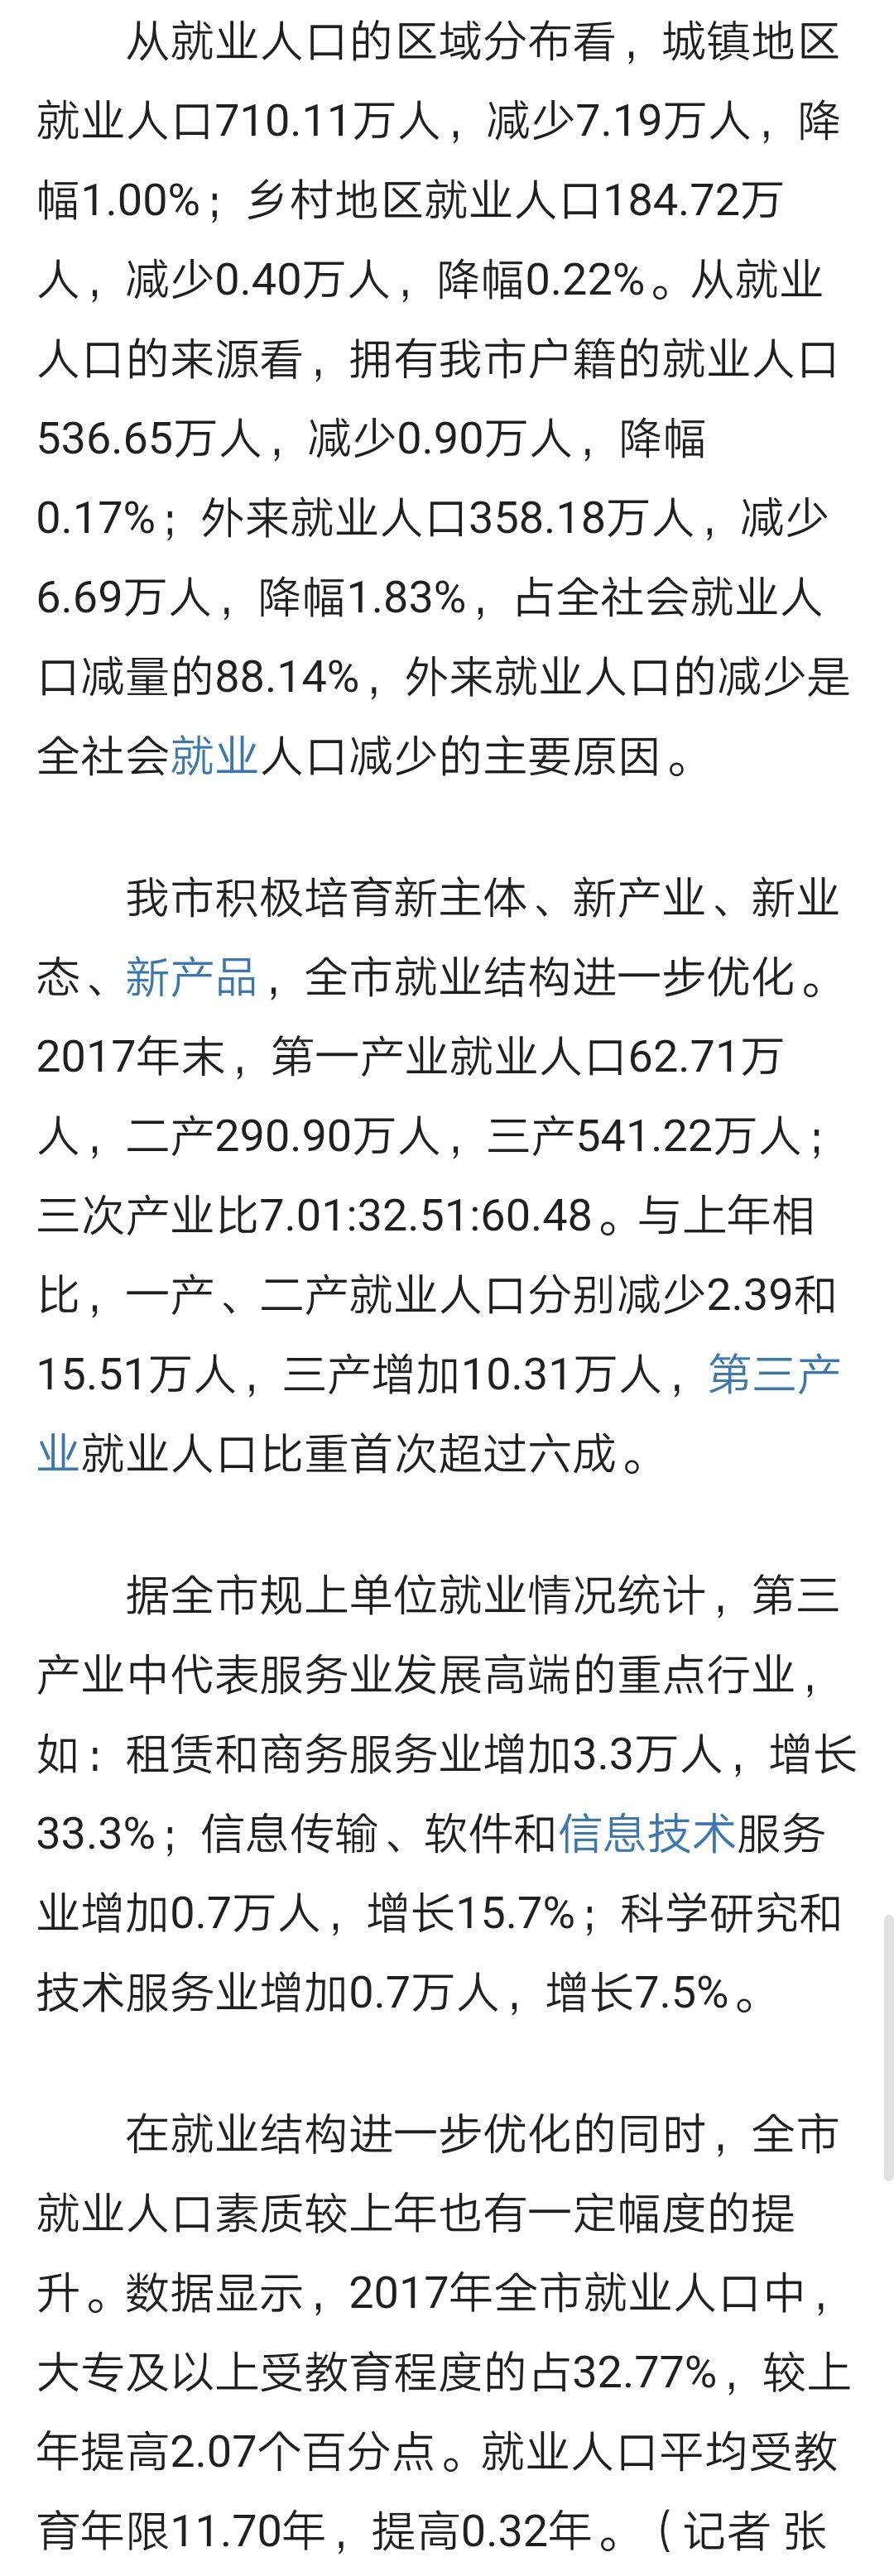 如何评价天津市2018第一季度GDP增速1.9%?